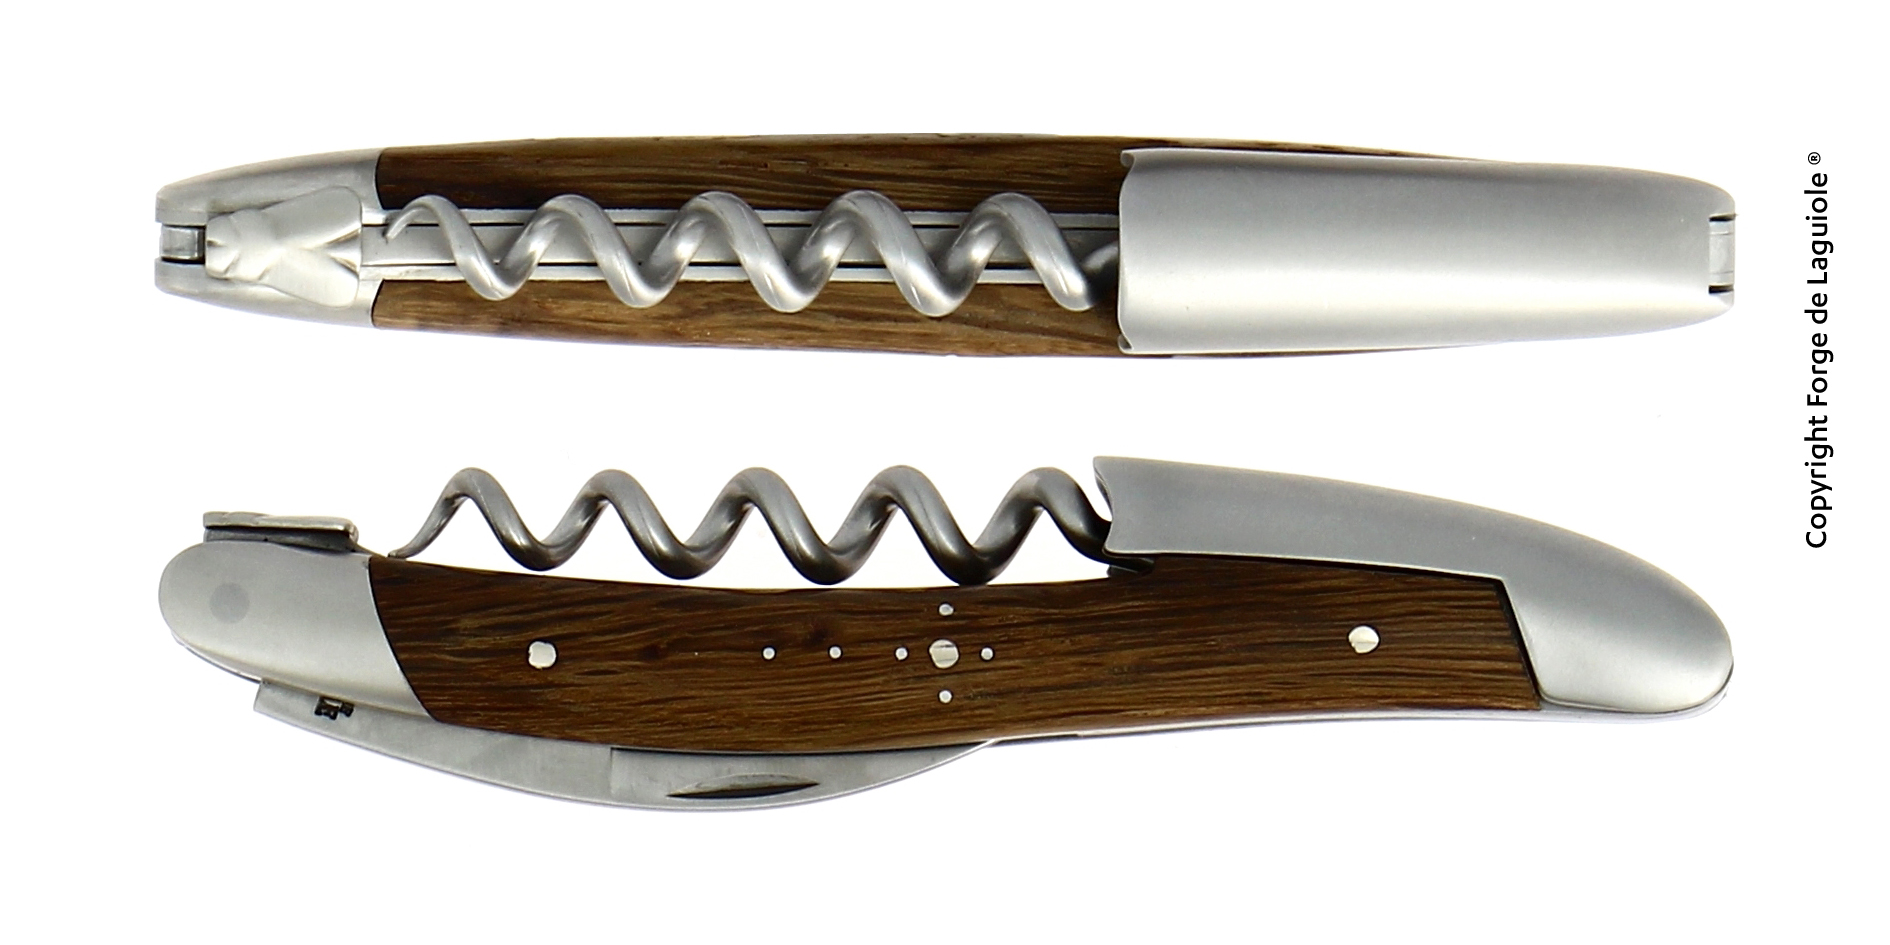 Sommelier Messer mit Griff aus Mooreiche, 5000 jahre alt, Kern